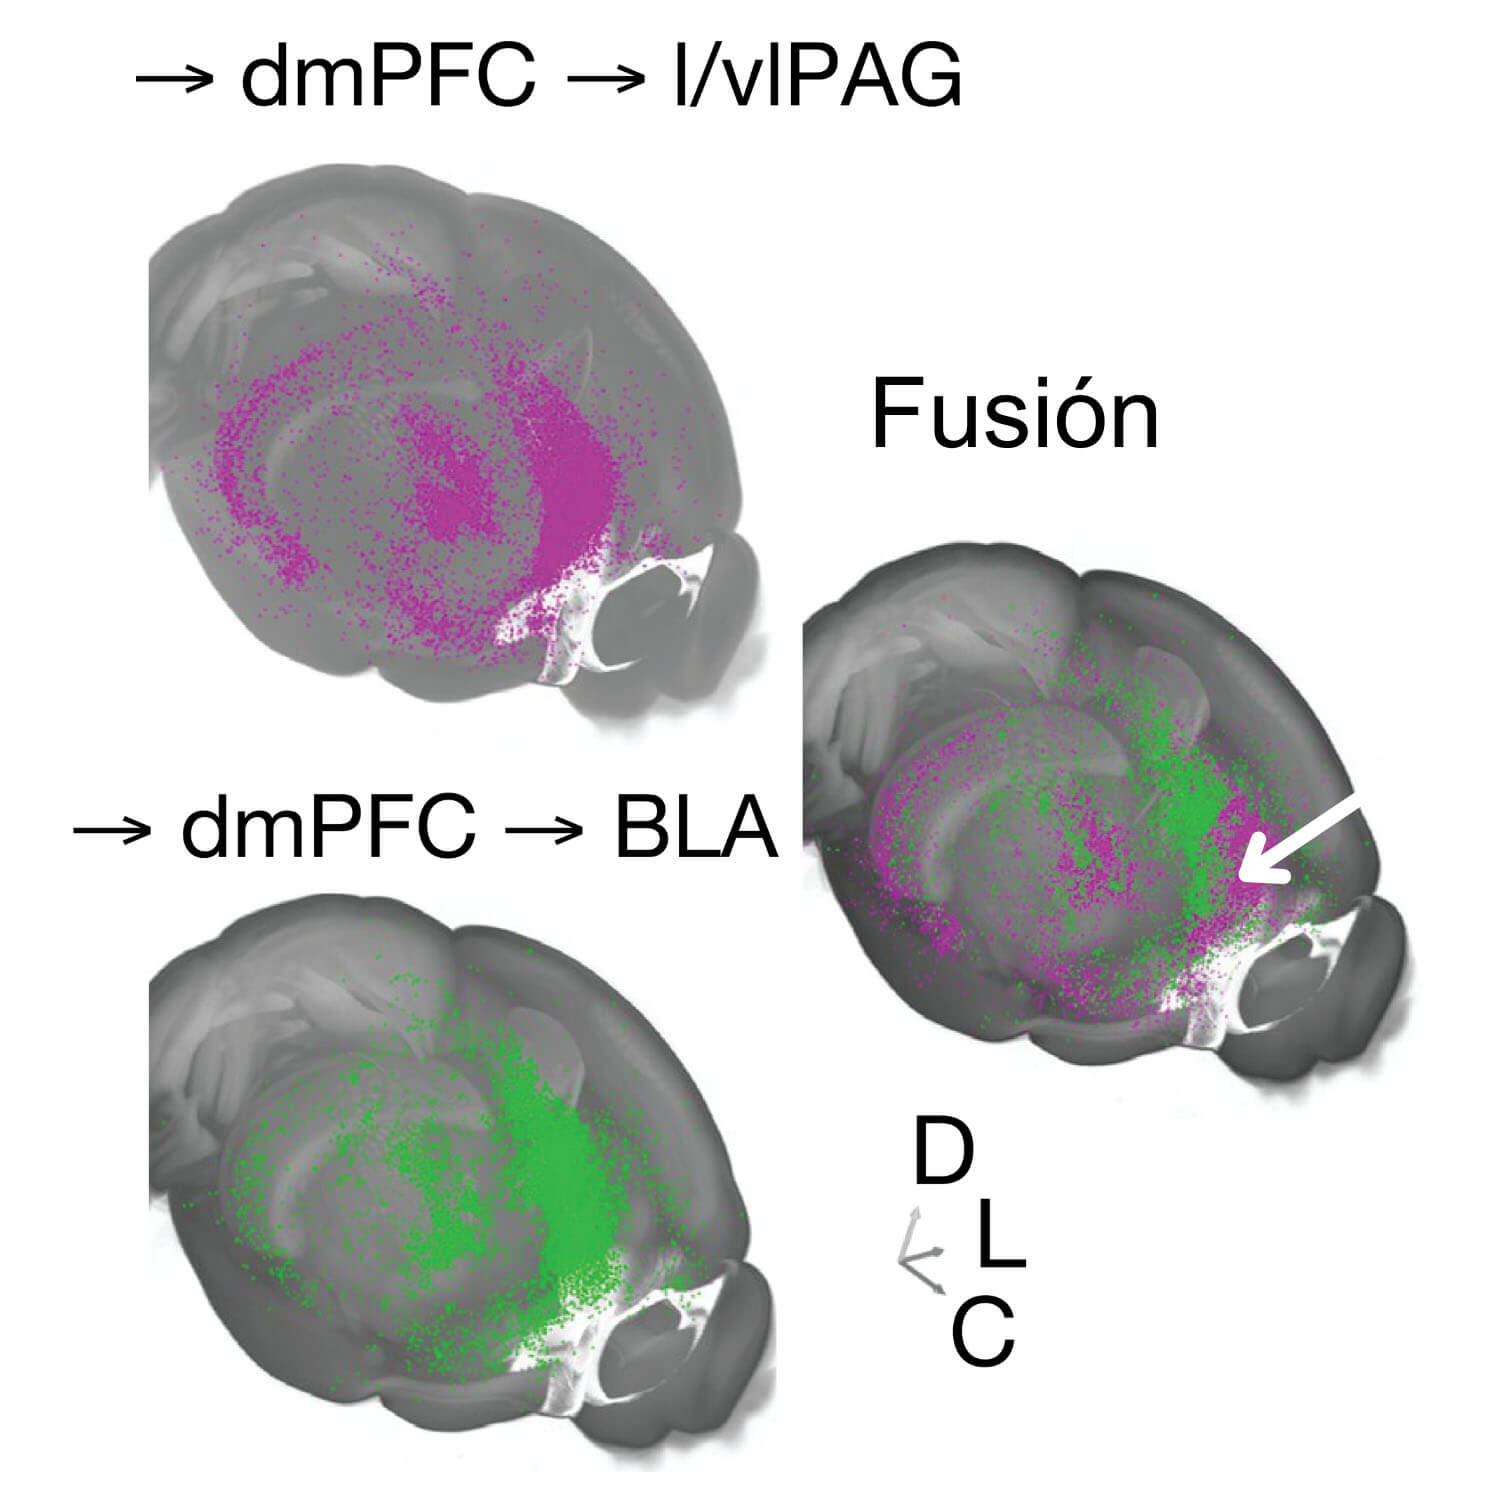 Tres imágenes transversales del cerebro de un ratón que muestran el rastreo del virus de la rabia. Las flechas muestran que dmPFC conduce a I/vIPAG y se fusiona. Flechas señalan desde dmPFC hacia BlA y hacia DLC.